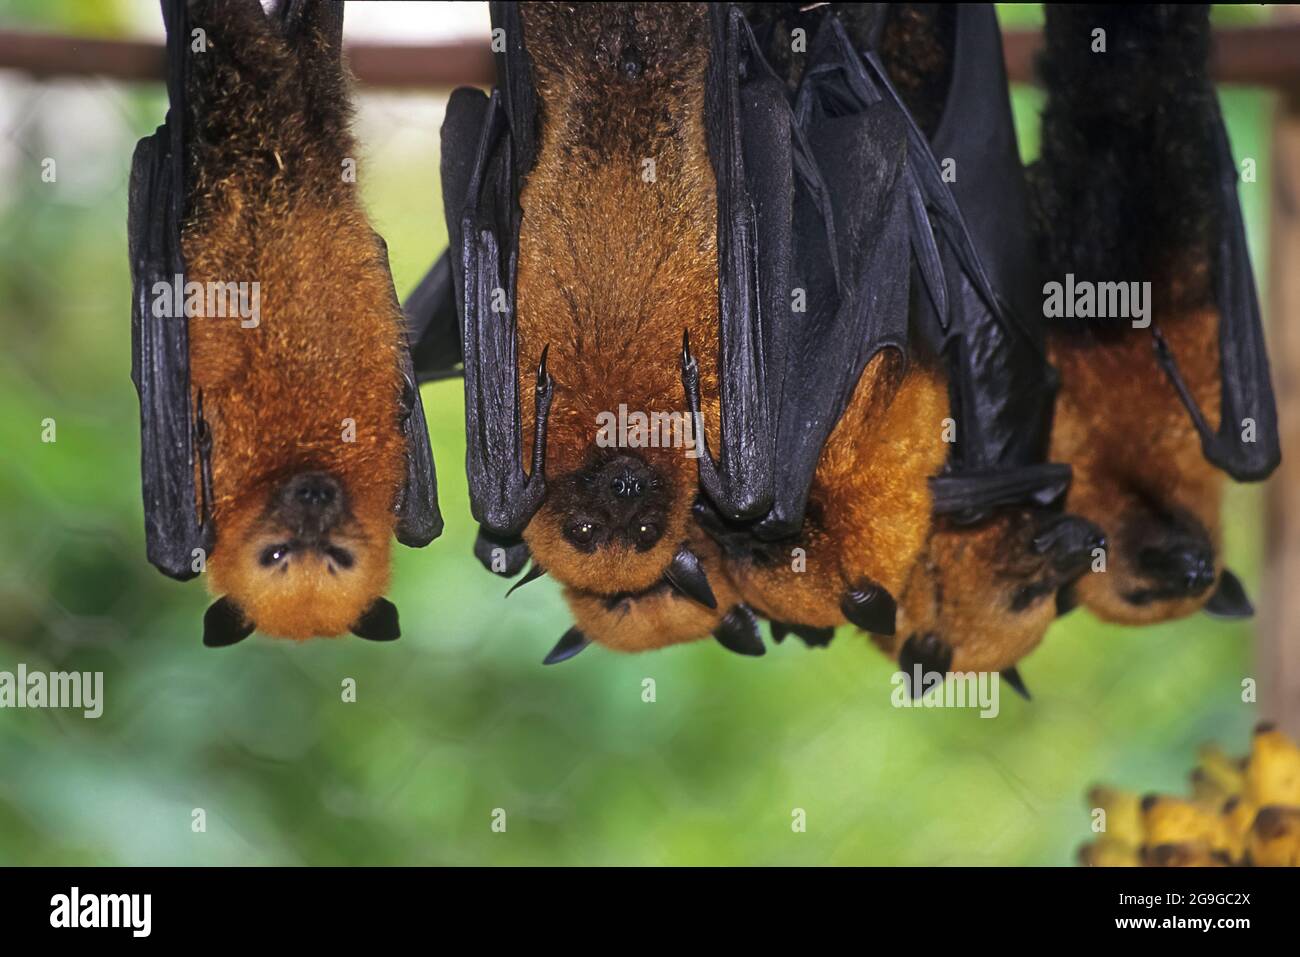 Flying Fox Fruit Bat è un genere di megabati che sono tra i più grandi pipistrelli del mondo. Sono comunemente noti come i pipistrelli di frutta o volpi volanti, amon Foto Stock